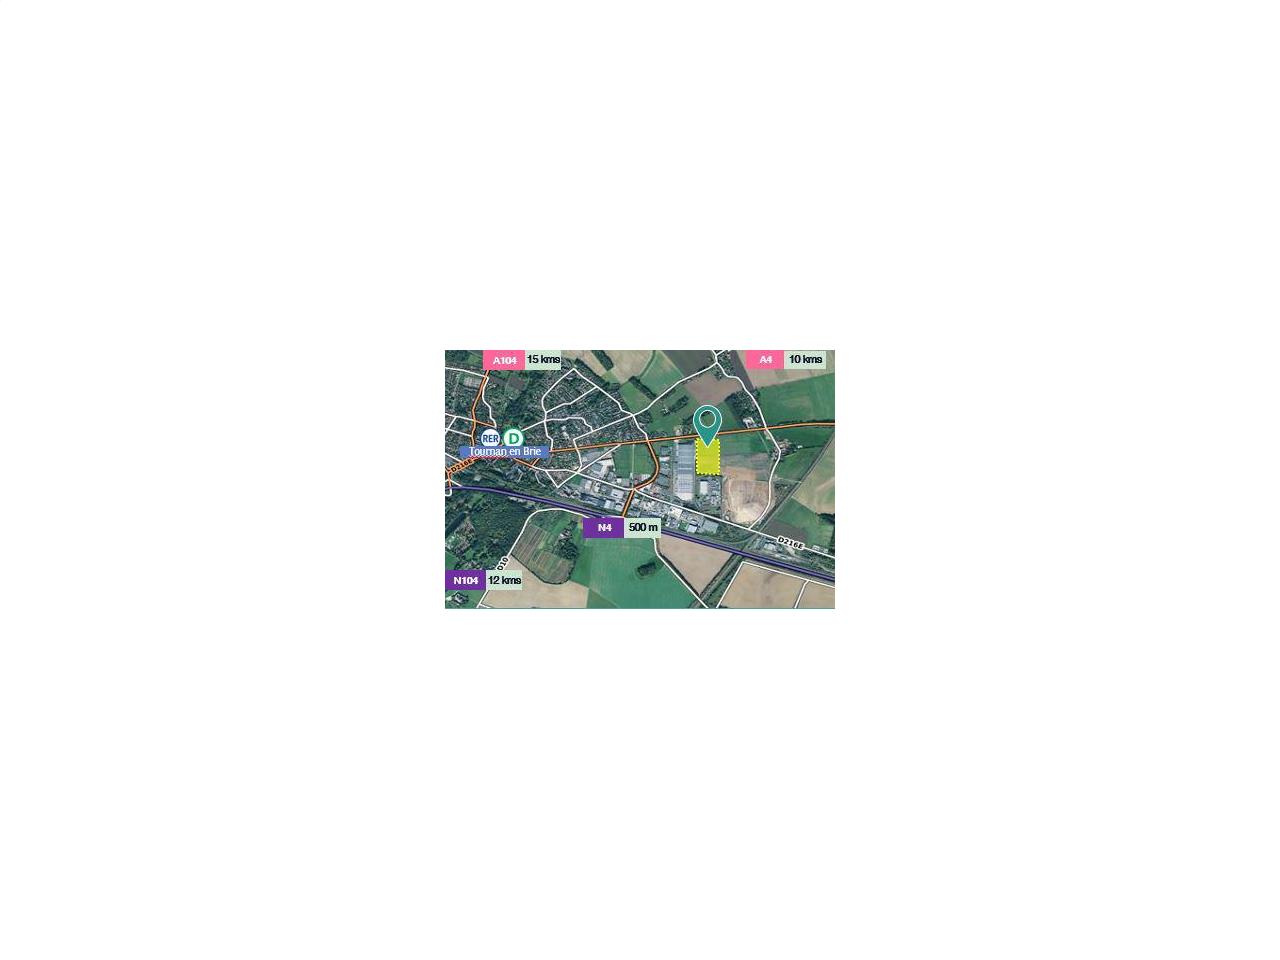 Location entrepôt classe a 30490m² Tournan-en-Brie